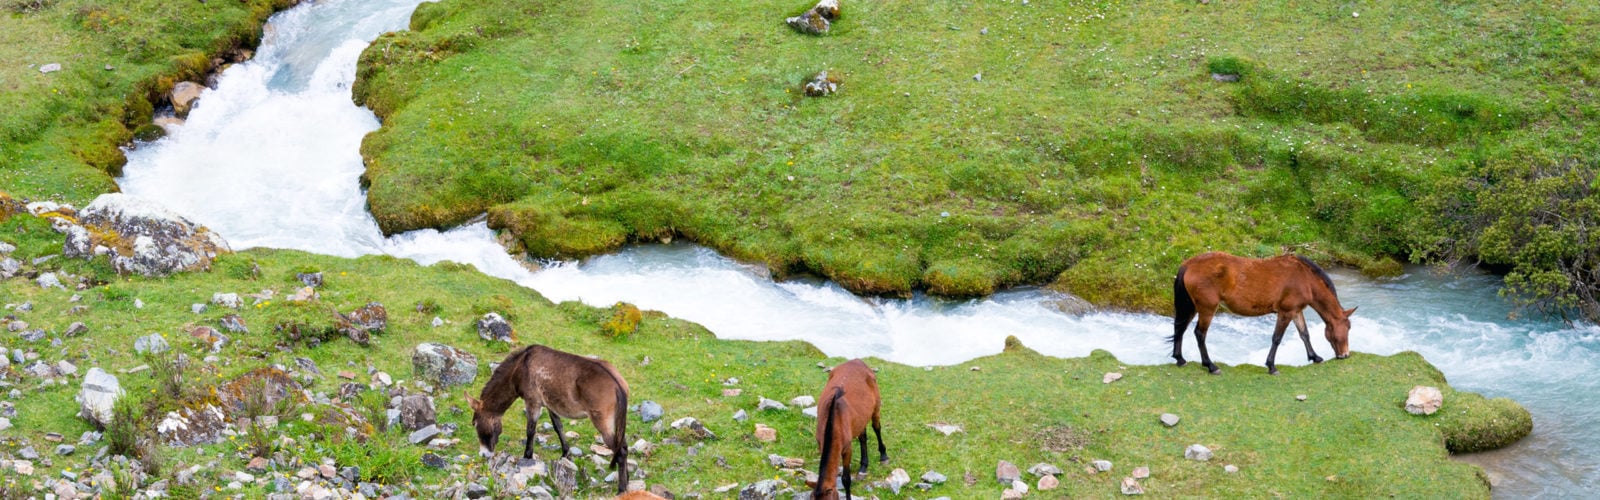 salkantay-trek-peru-horses-grazing